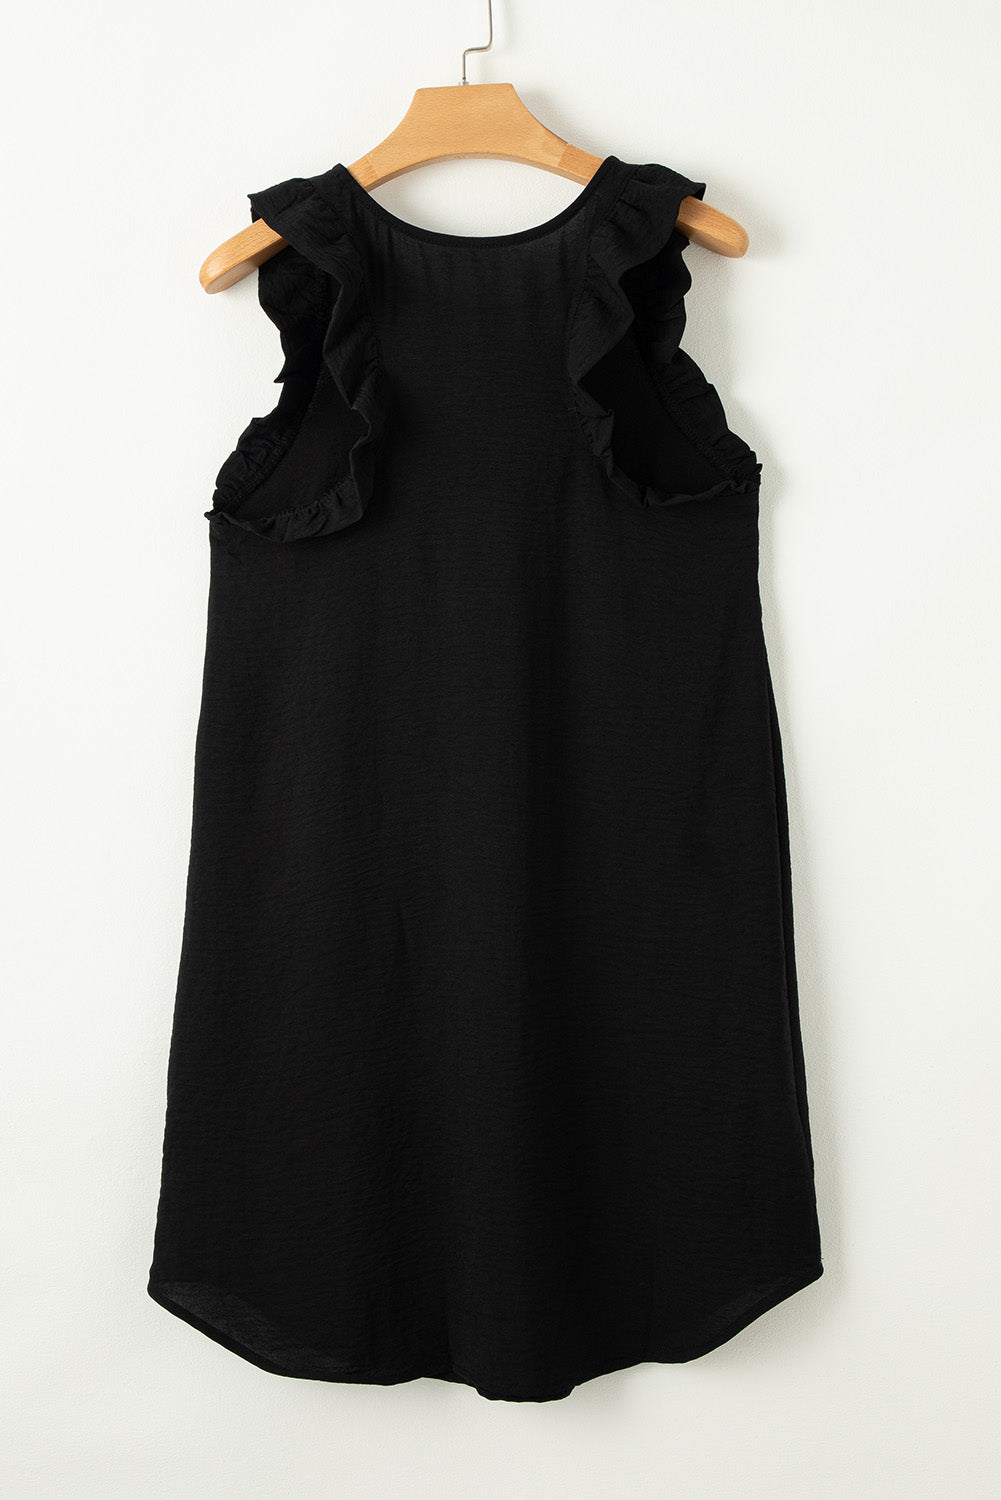 Schwarzes, einfarbiges, ärmelloses Etui-Minikleid mit Rüschen